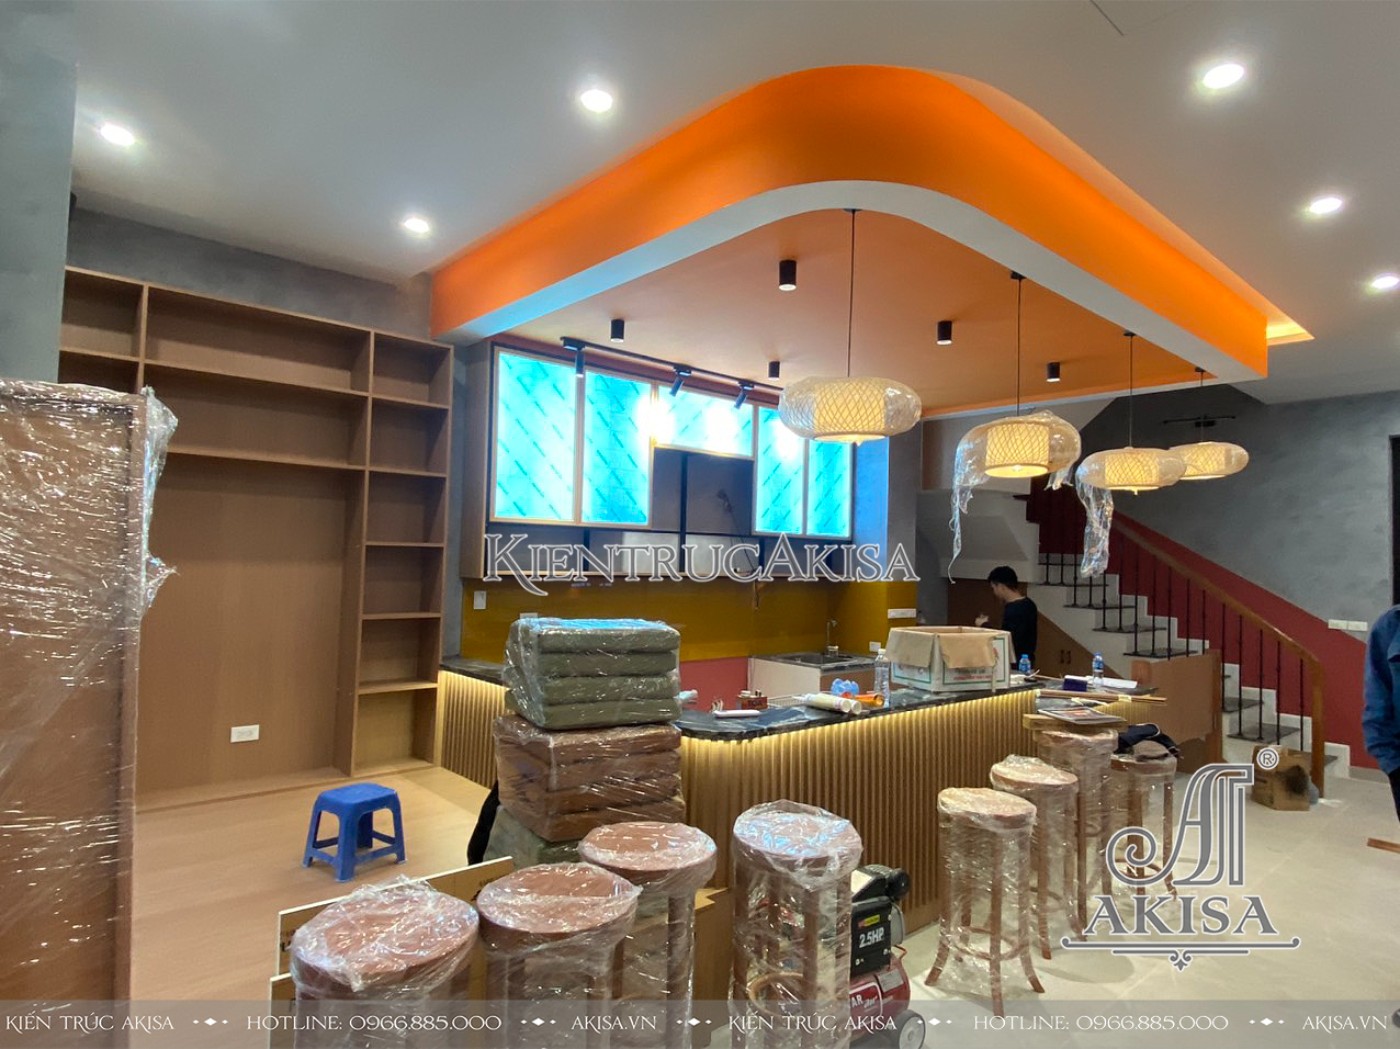 Akisa thiết kế và thi công cải tạo nội thất quán cafe sân vườn tại Hà Nội.